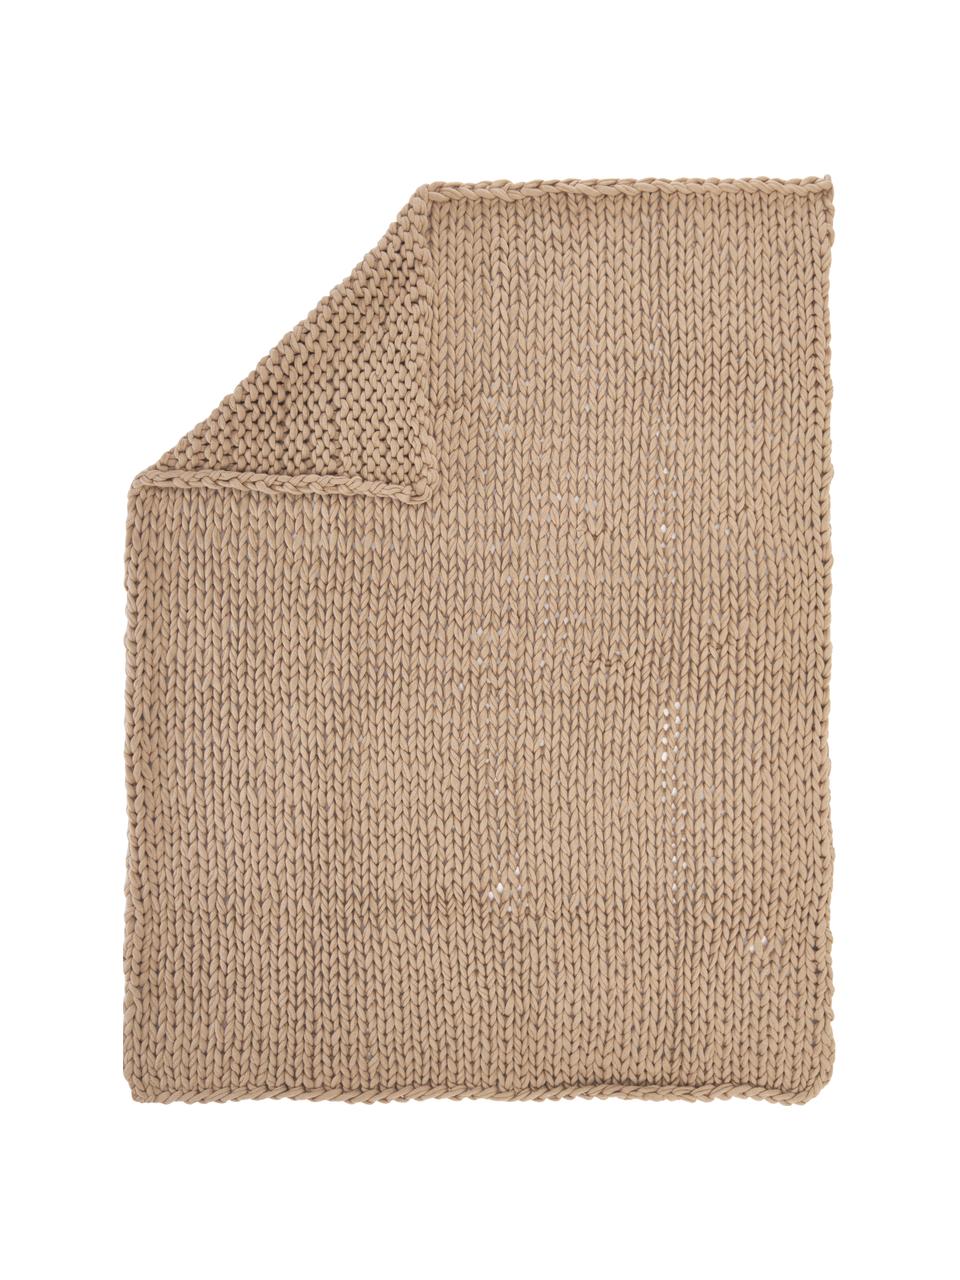 Manta artesanal de punto grueso Adyna, 100% poliacrílico, Beige, An 130 x L 170 cm